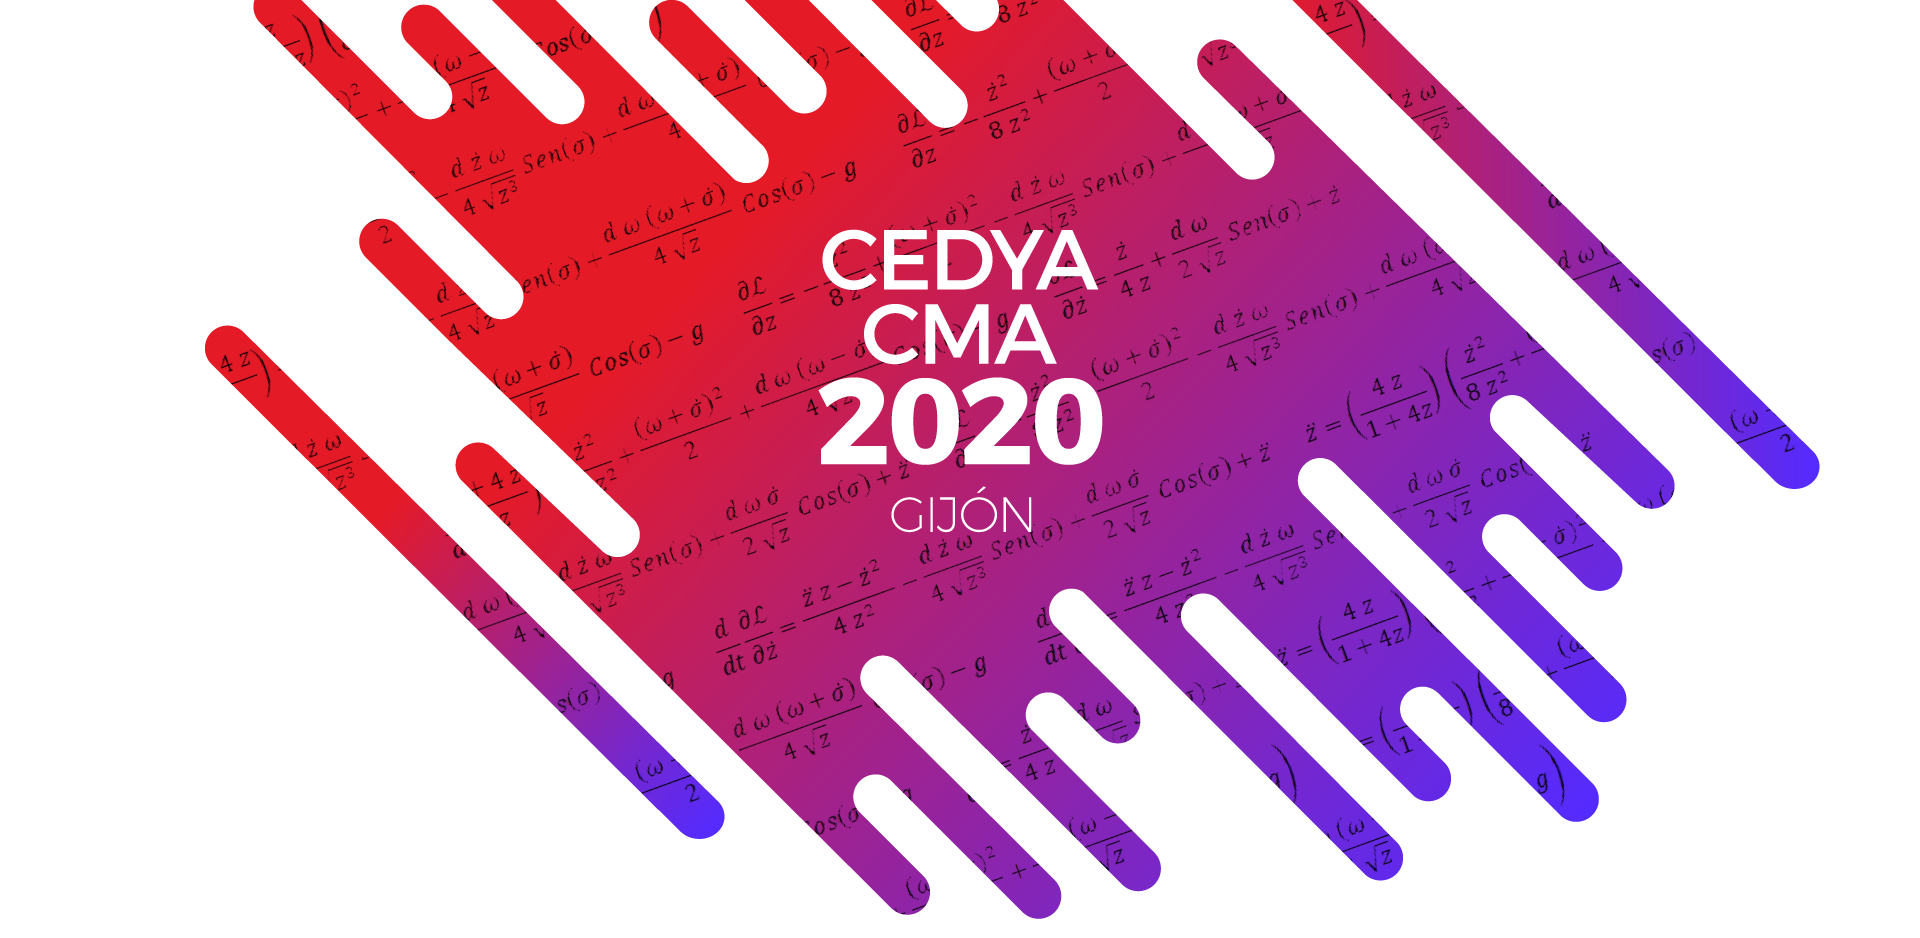 (c) Cedya2020.es